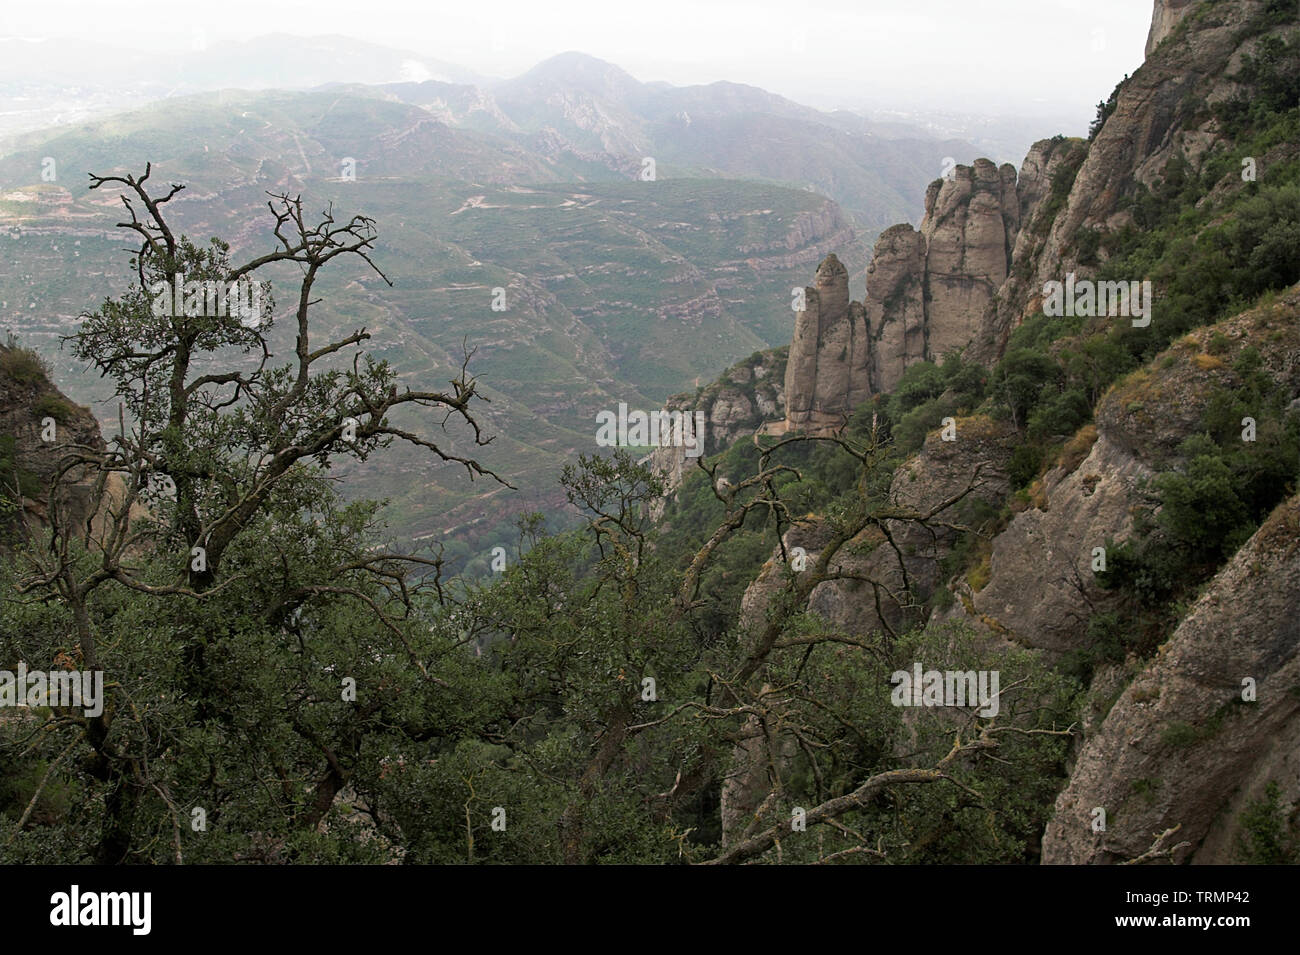 Les rochers et les collines près de Montserrat, en Catalogne, Espagne. Felsen und nahe Hügel, Montserrat, Katalonien Spanien. Je Skały wzgórza w okolicy Montserrat. Banque D'Images